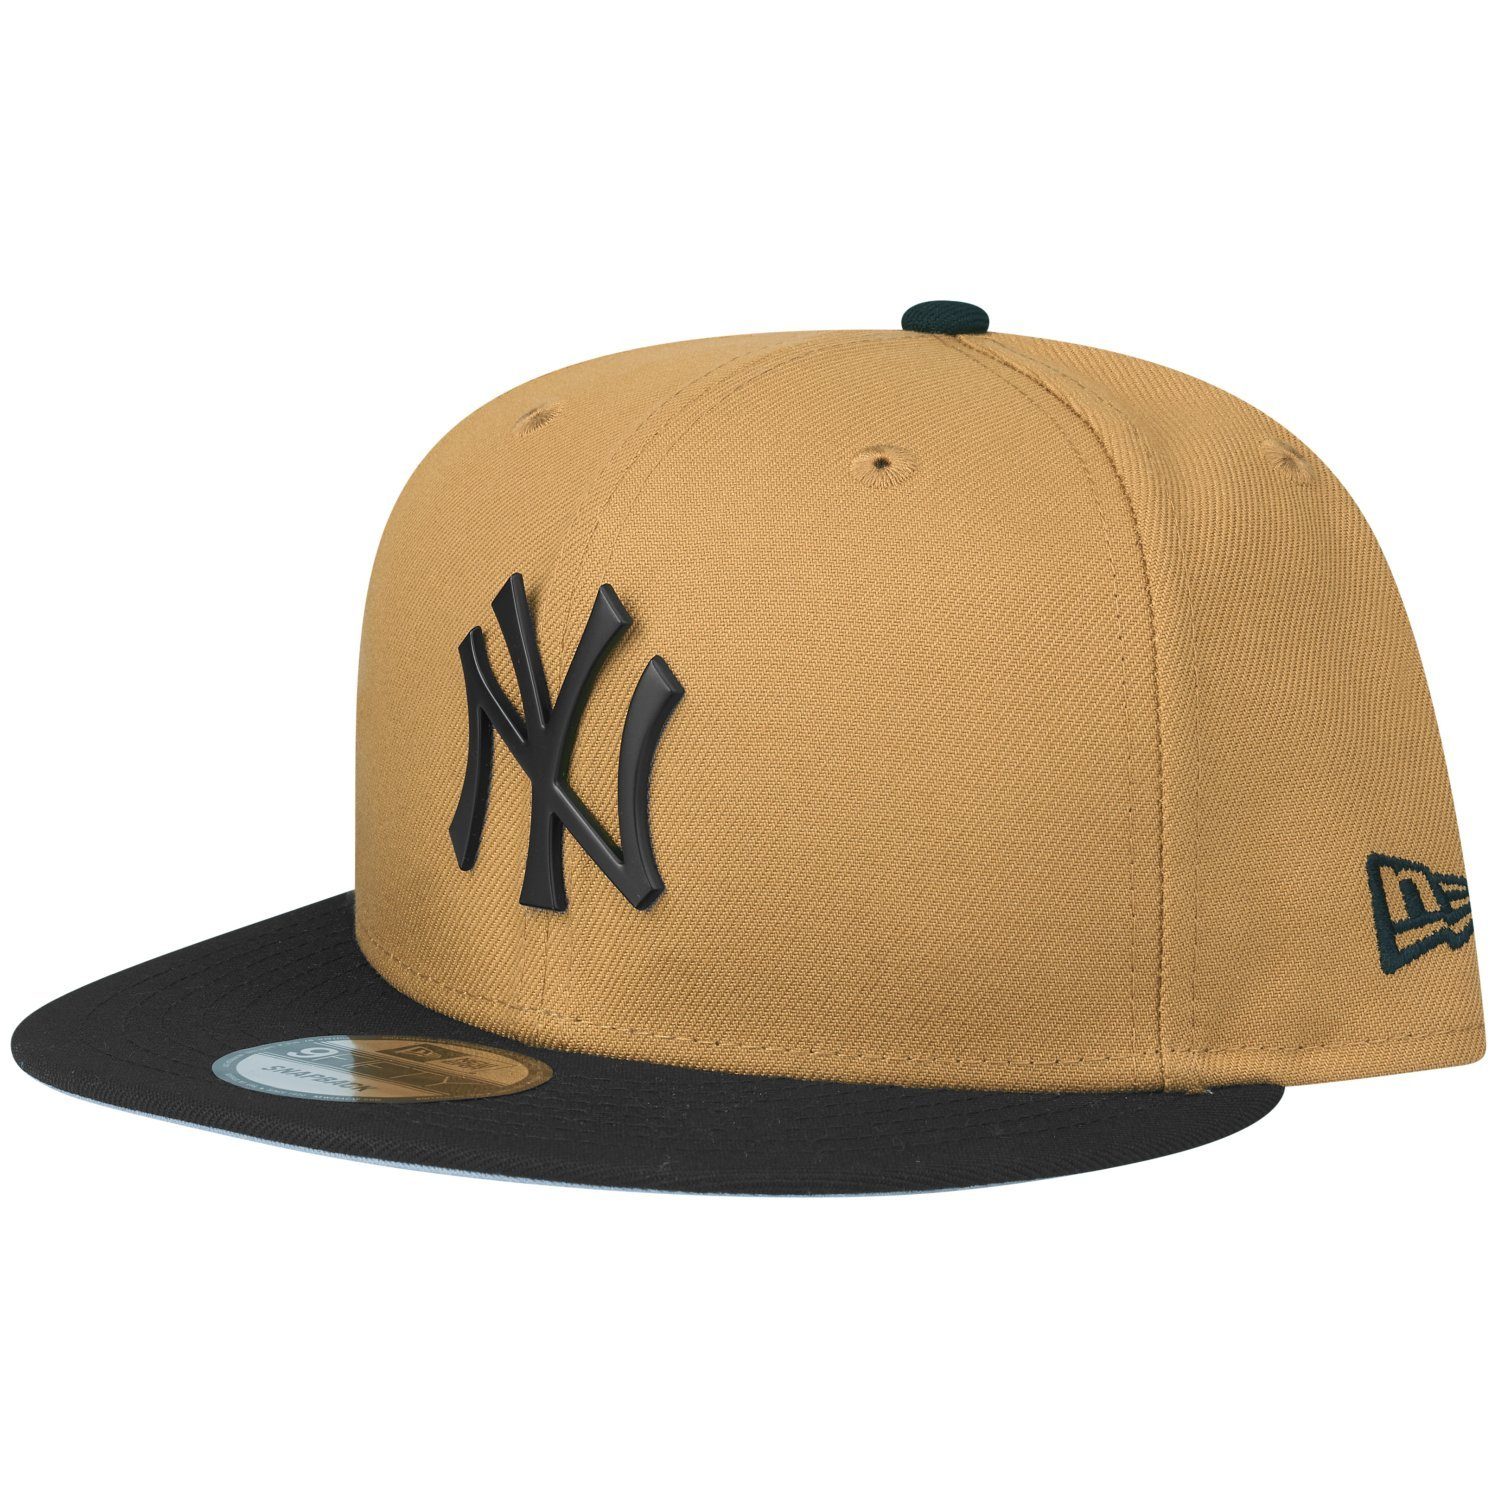 New Era Snapback Cap METAL BADGE New York Yankees panama